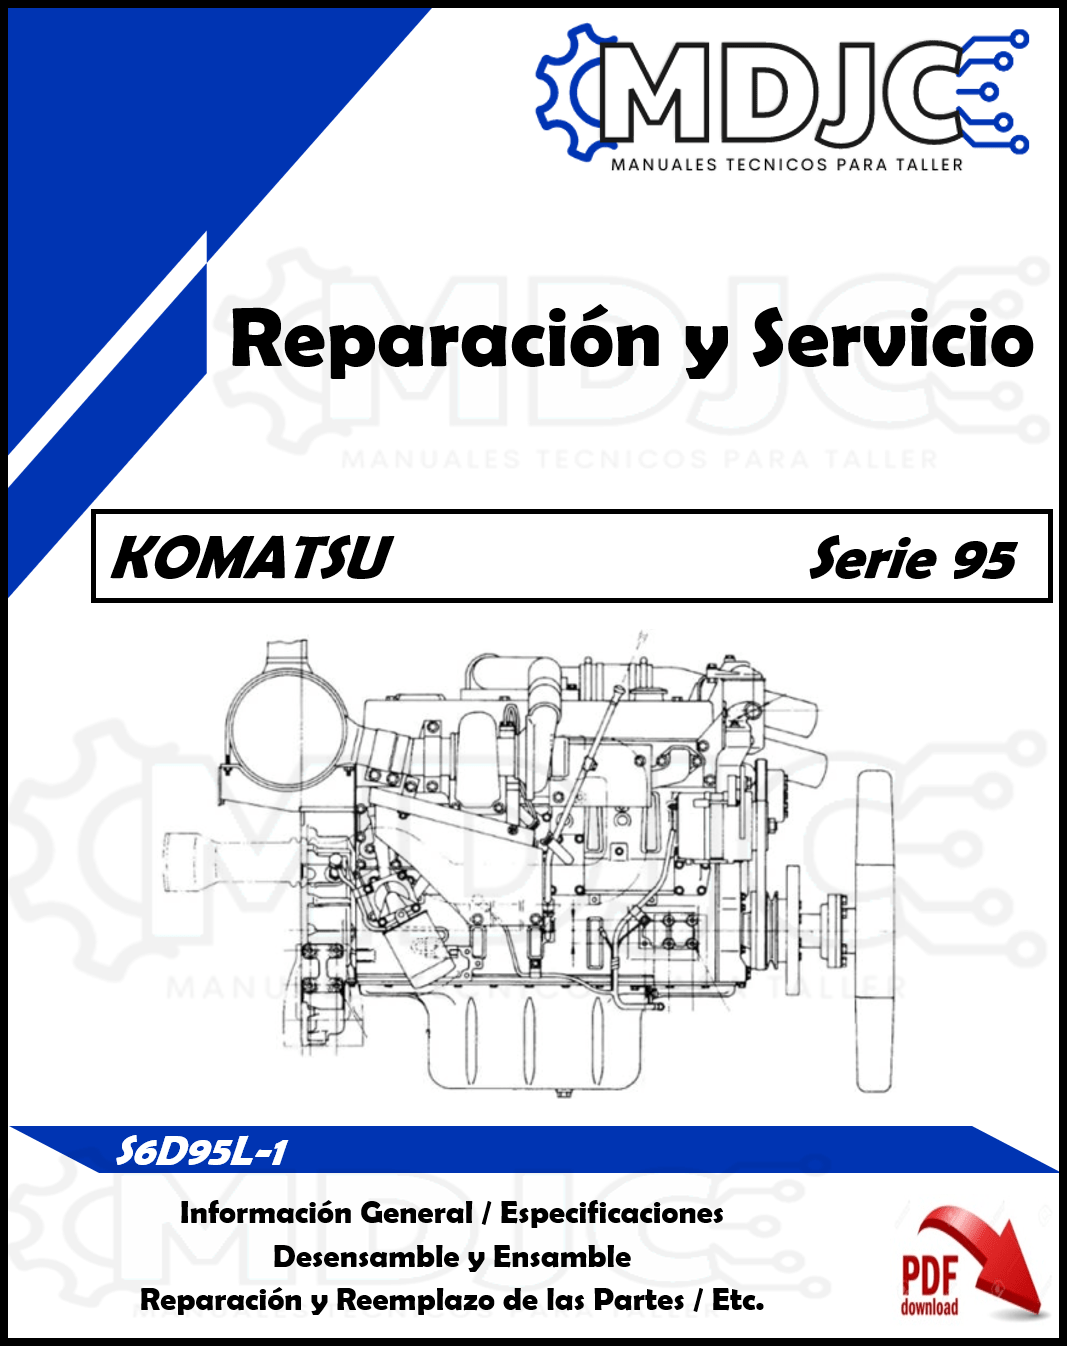 Manual de Taller (Desarmado y Armado) Motor Komatsu S6D95L-1 (Serie 95)